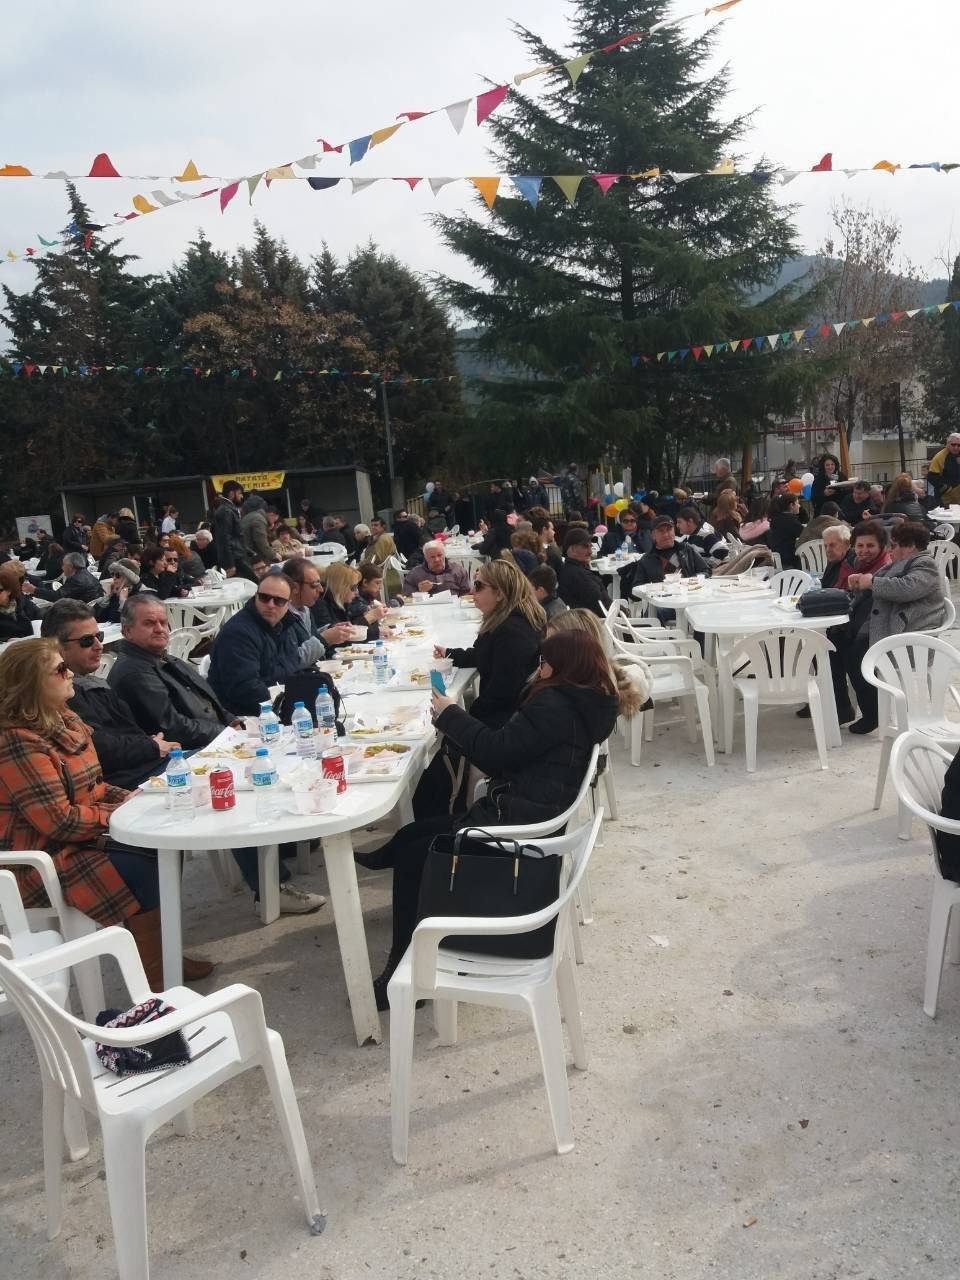  Πολύς κόσμος και φέτος στο Ακροβούνι (Φωτογραφίες)